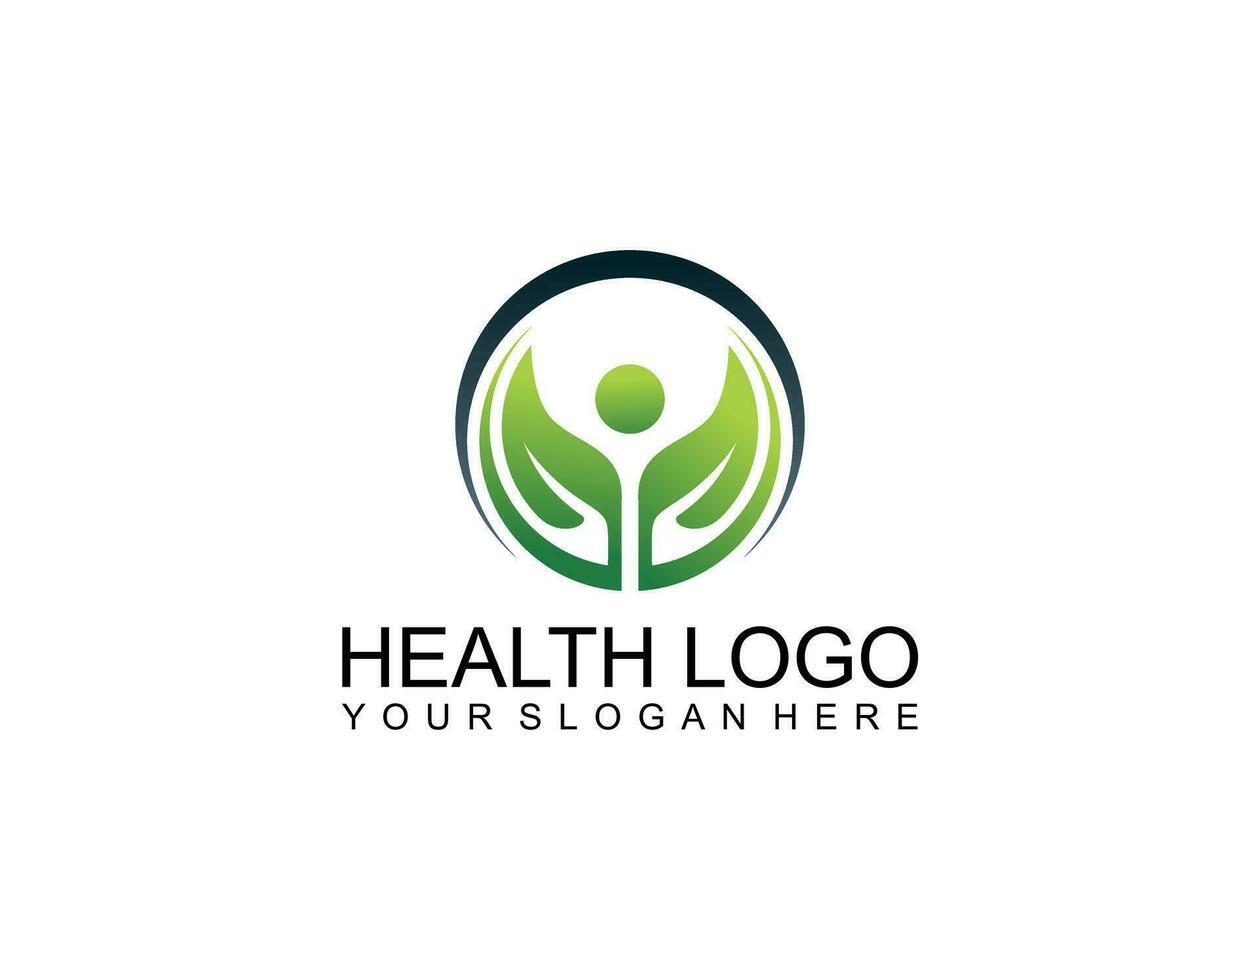 mensch denkt gesundheit, geist und erfolg logo design inspiration vektor